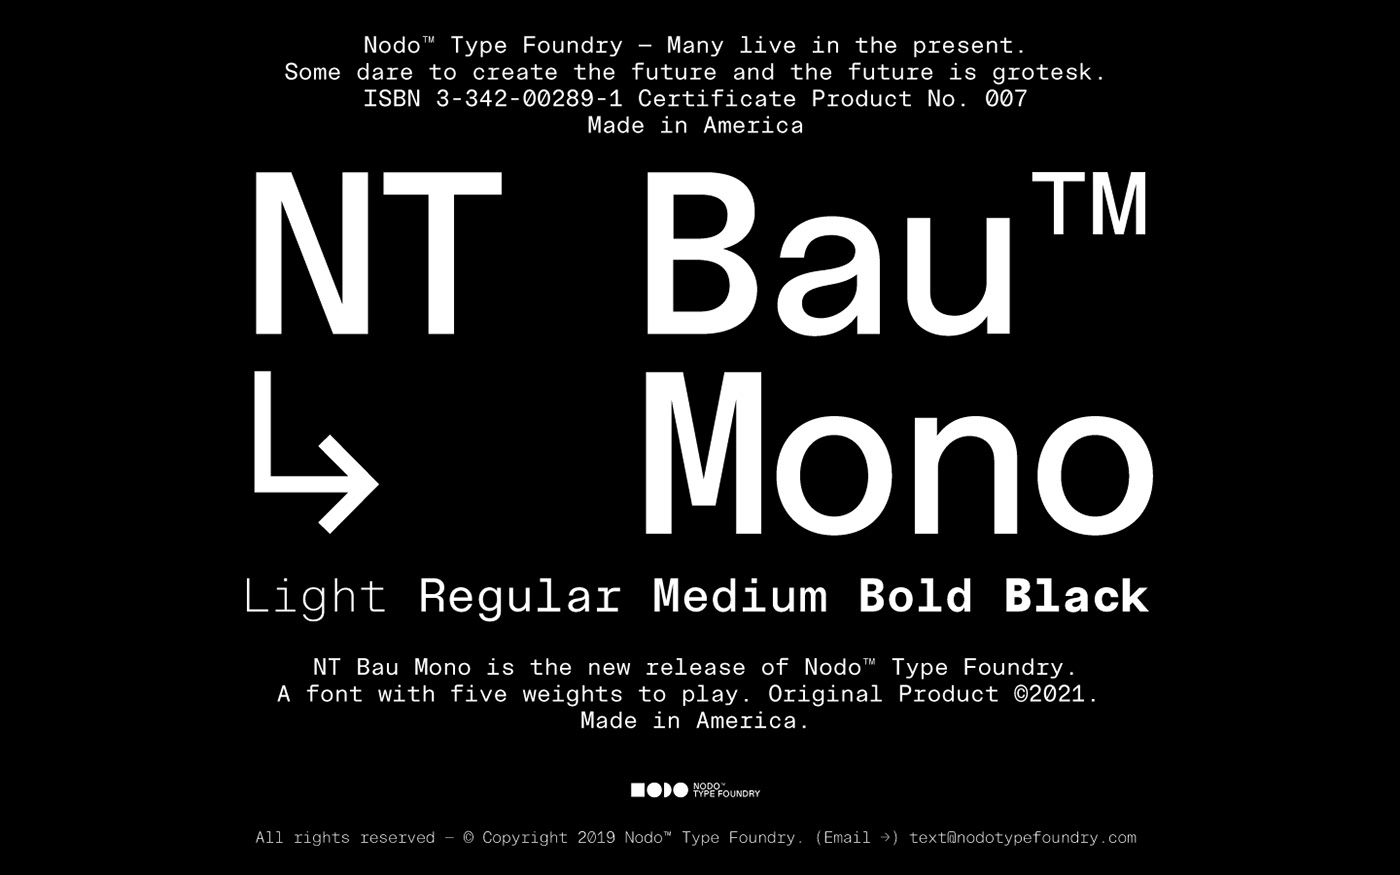 branding  design editorial design  graphic design  tipografia type type design typography   typography design